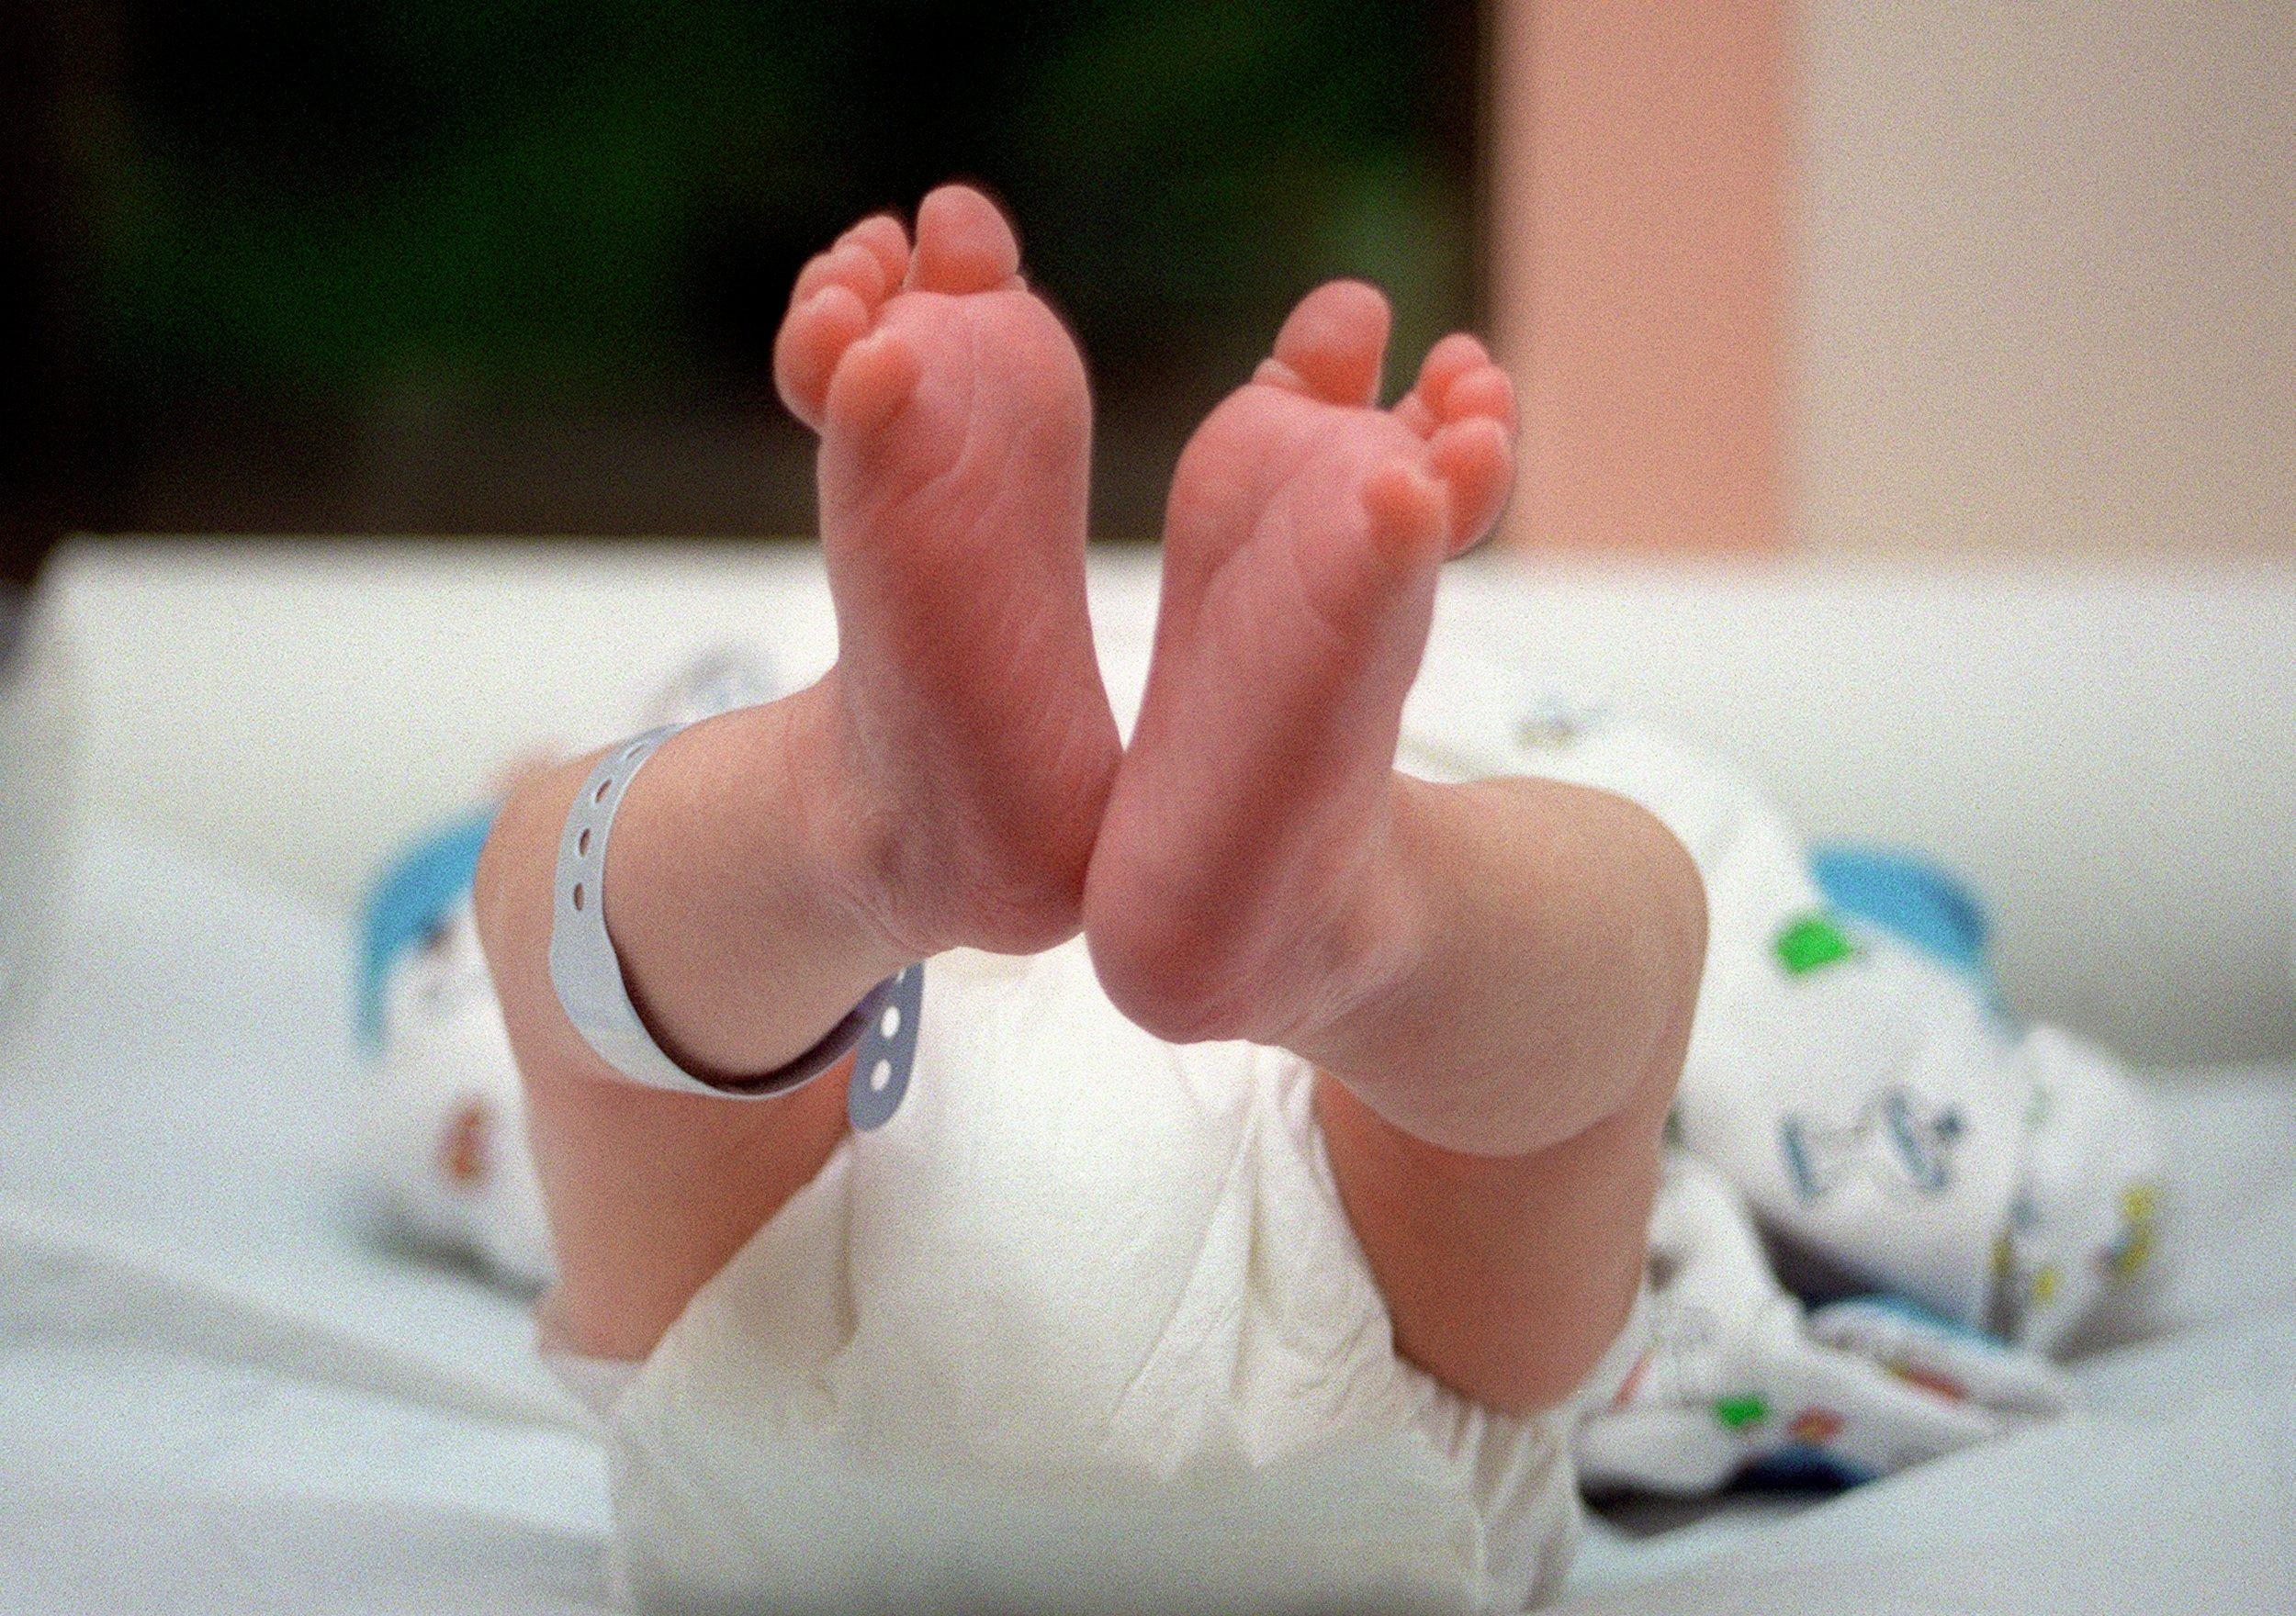 un nouveau-né est couché sur une table à langer, le 05 juin 2001 juste après sa naissance, au service maternité de l'hôpital franco-britannique de Levallois-Perret. (Photo by Didier PALLAGES / AFP)